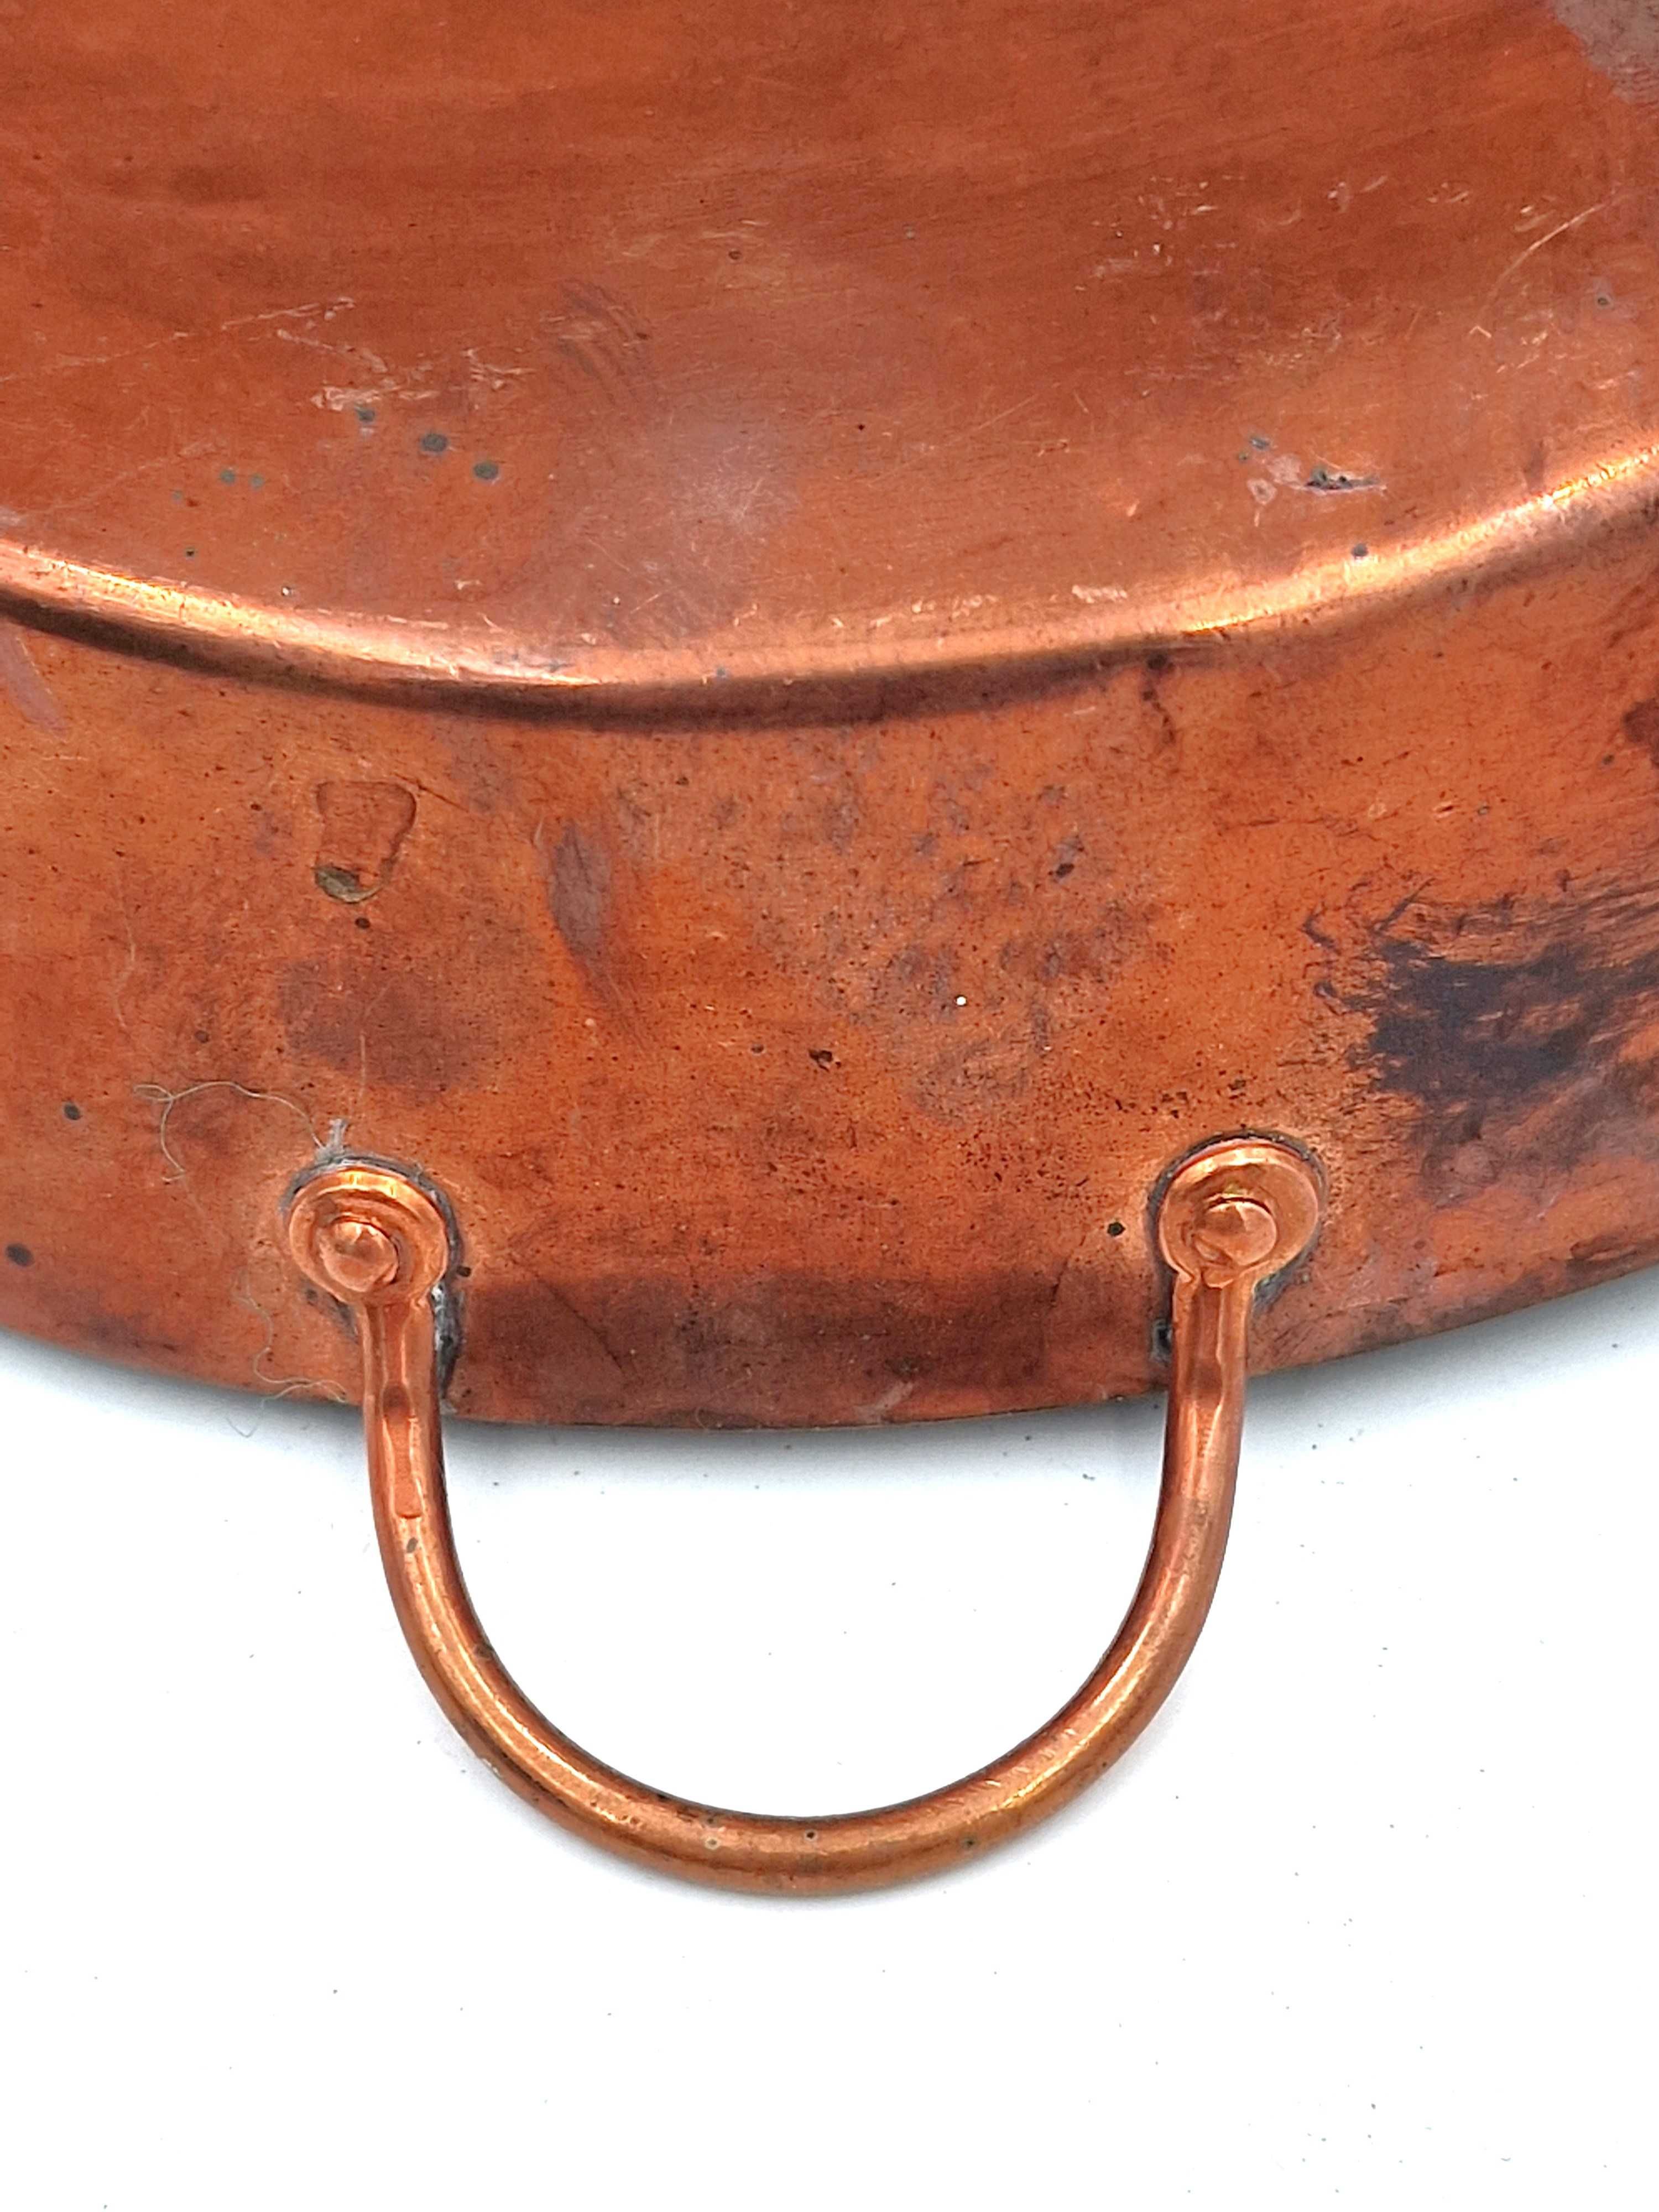 Miedziana okrągła patelnia - garnek z uchwytami  dekoracja miedziana